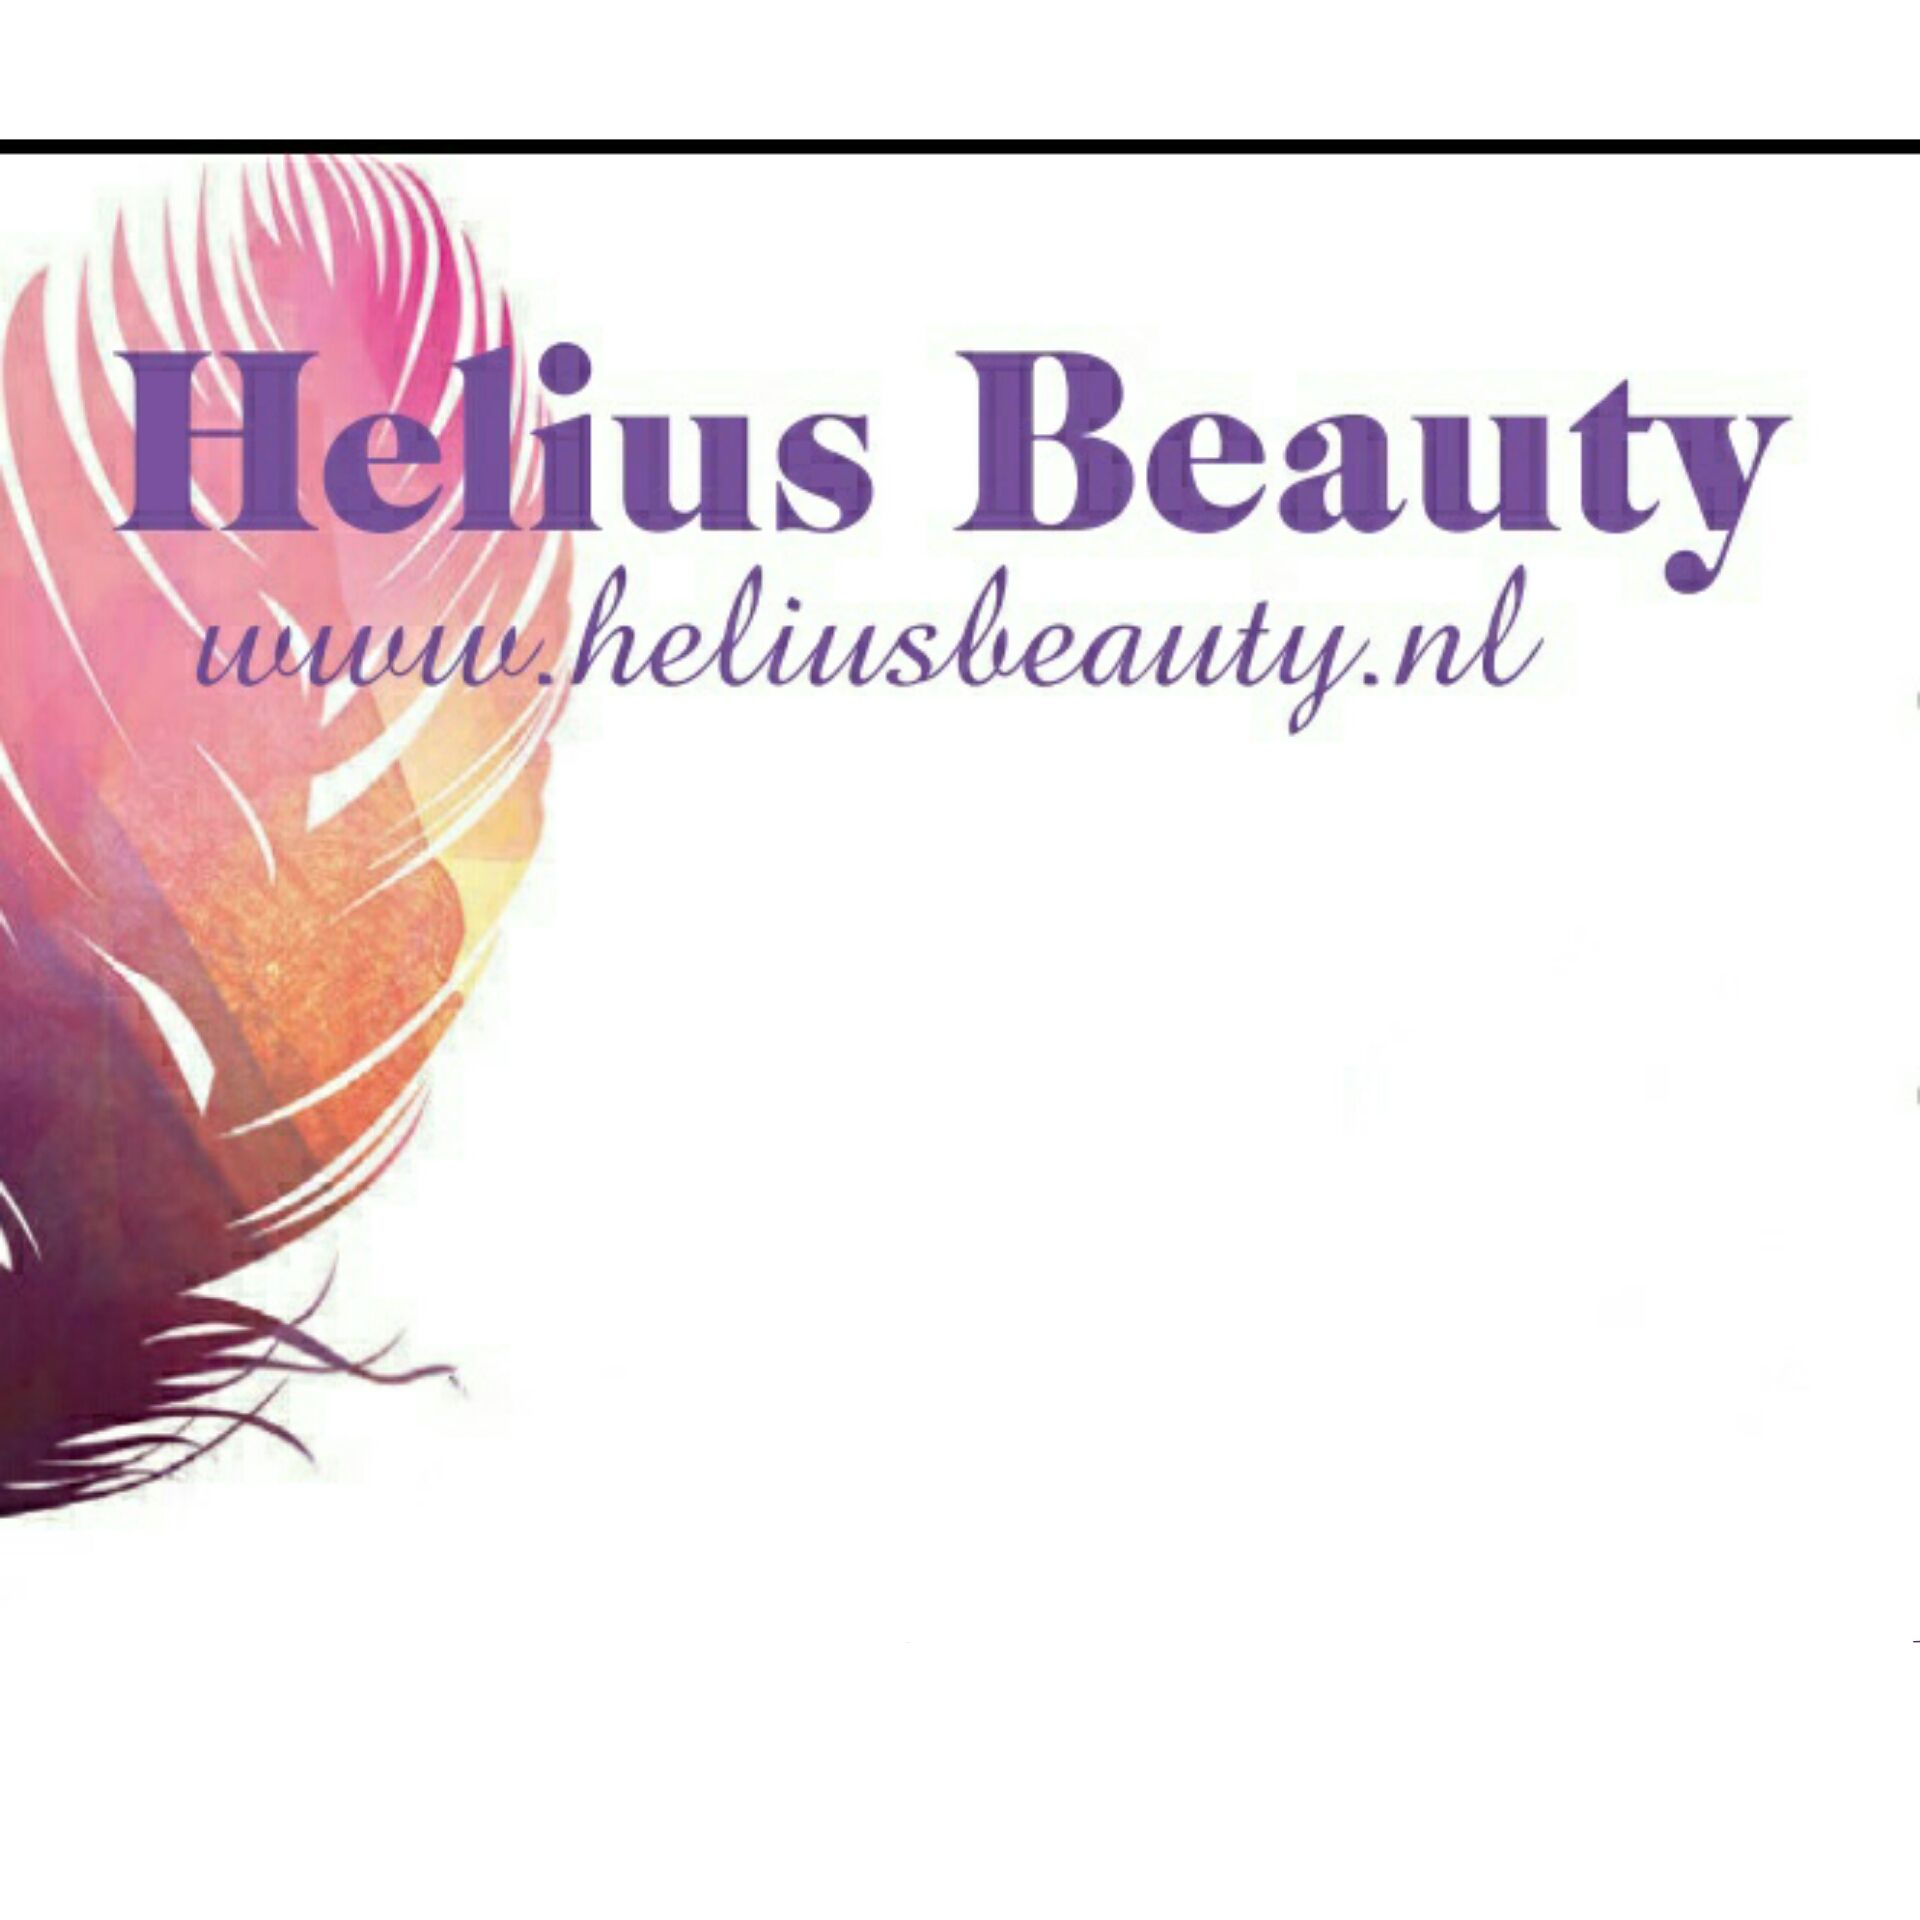 Helius Beauty gestart via getBIZZI